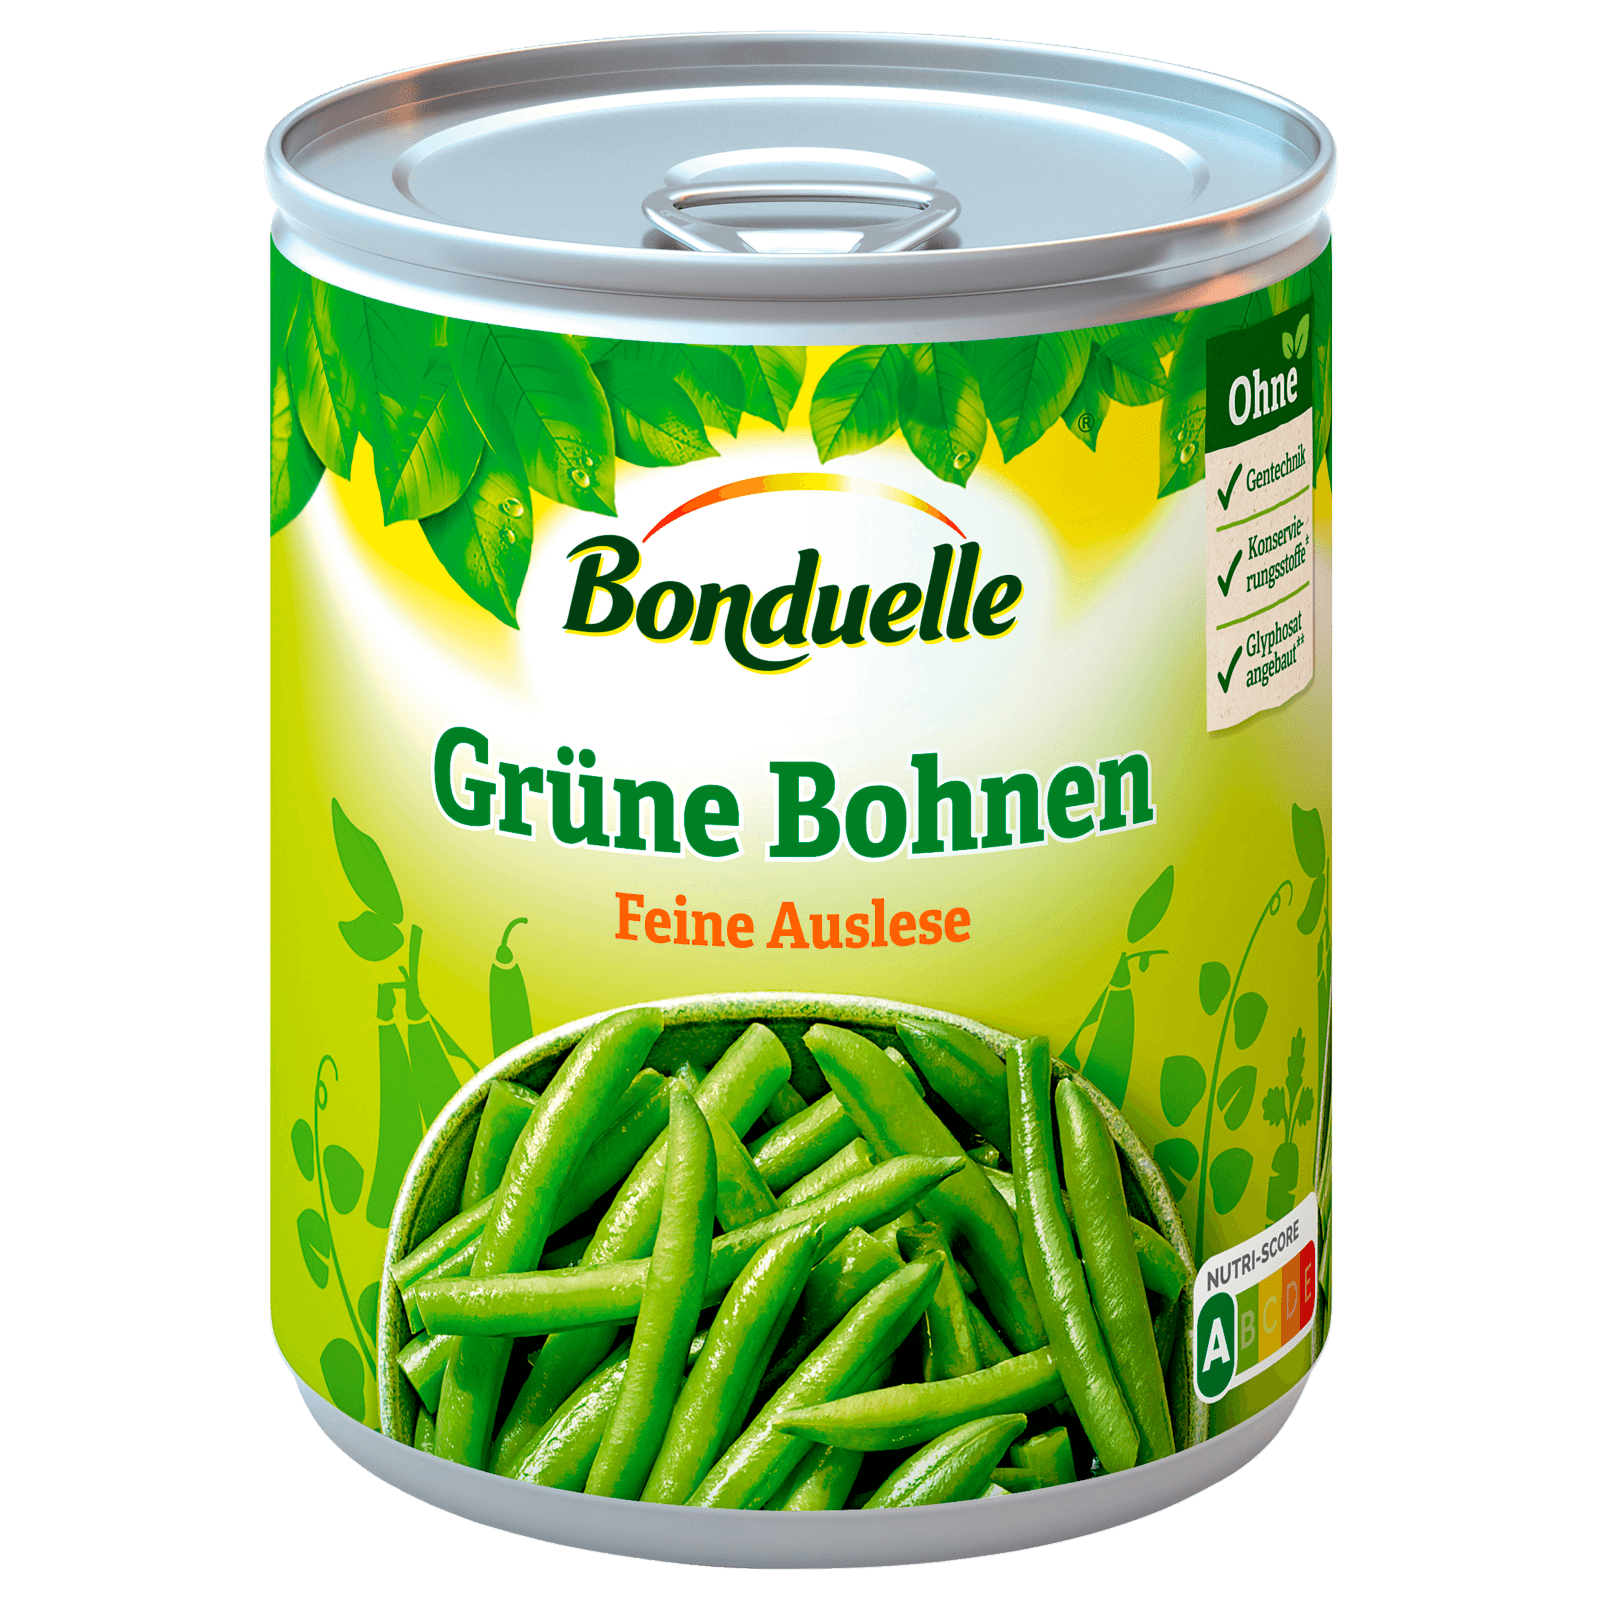 Bonduelle Grüne Bohnen 440g Bei Rewe Online Bestellen 